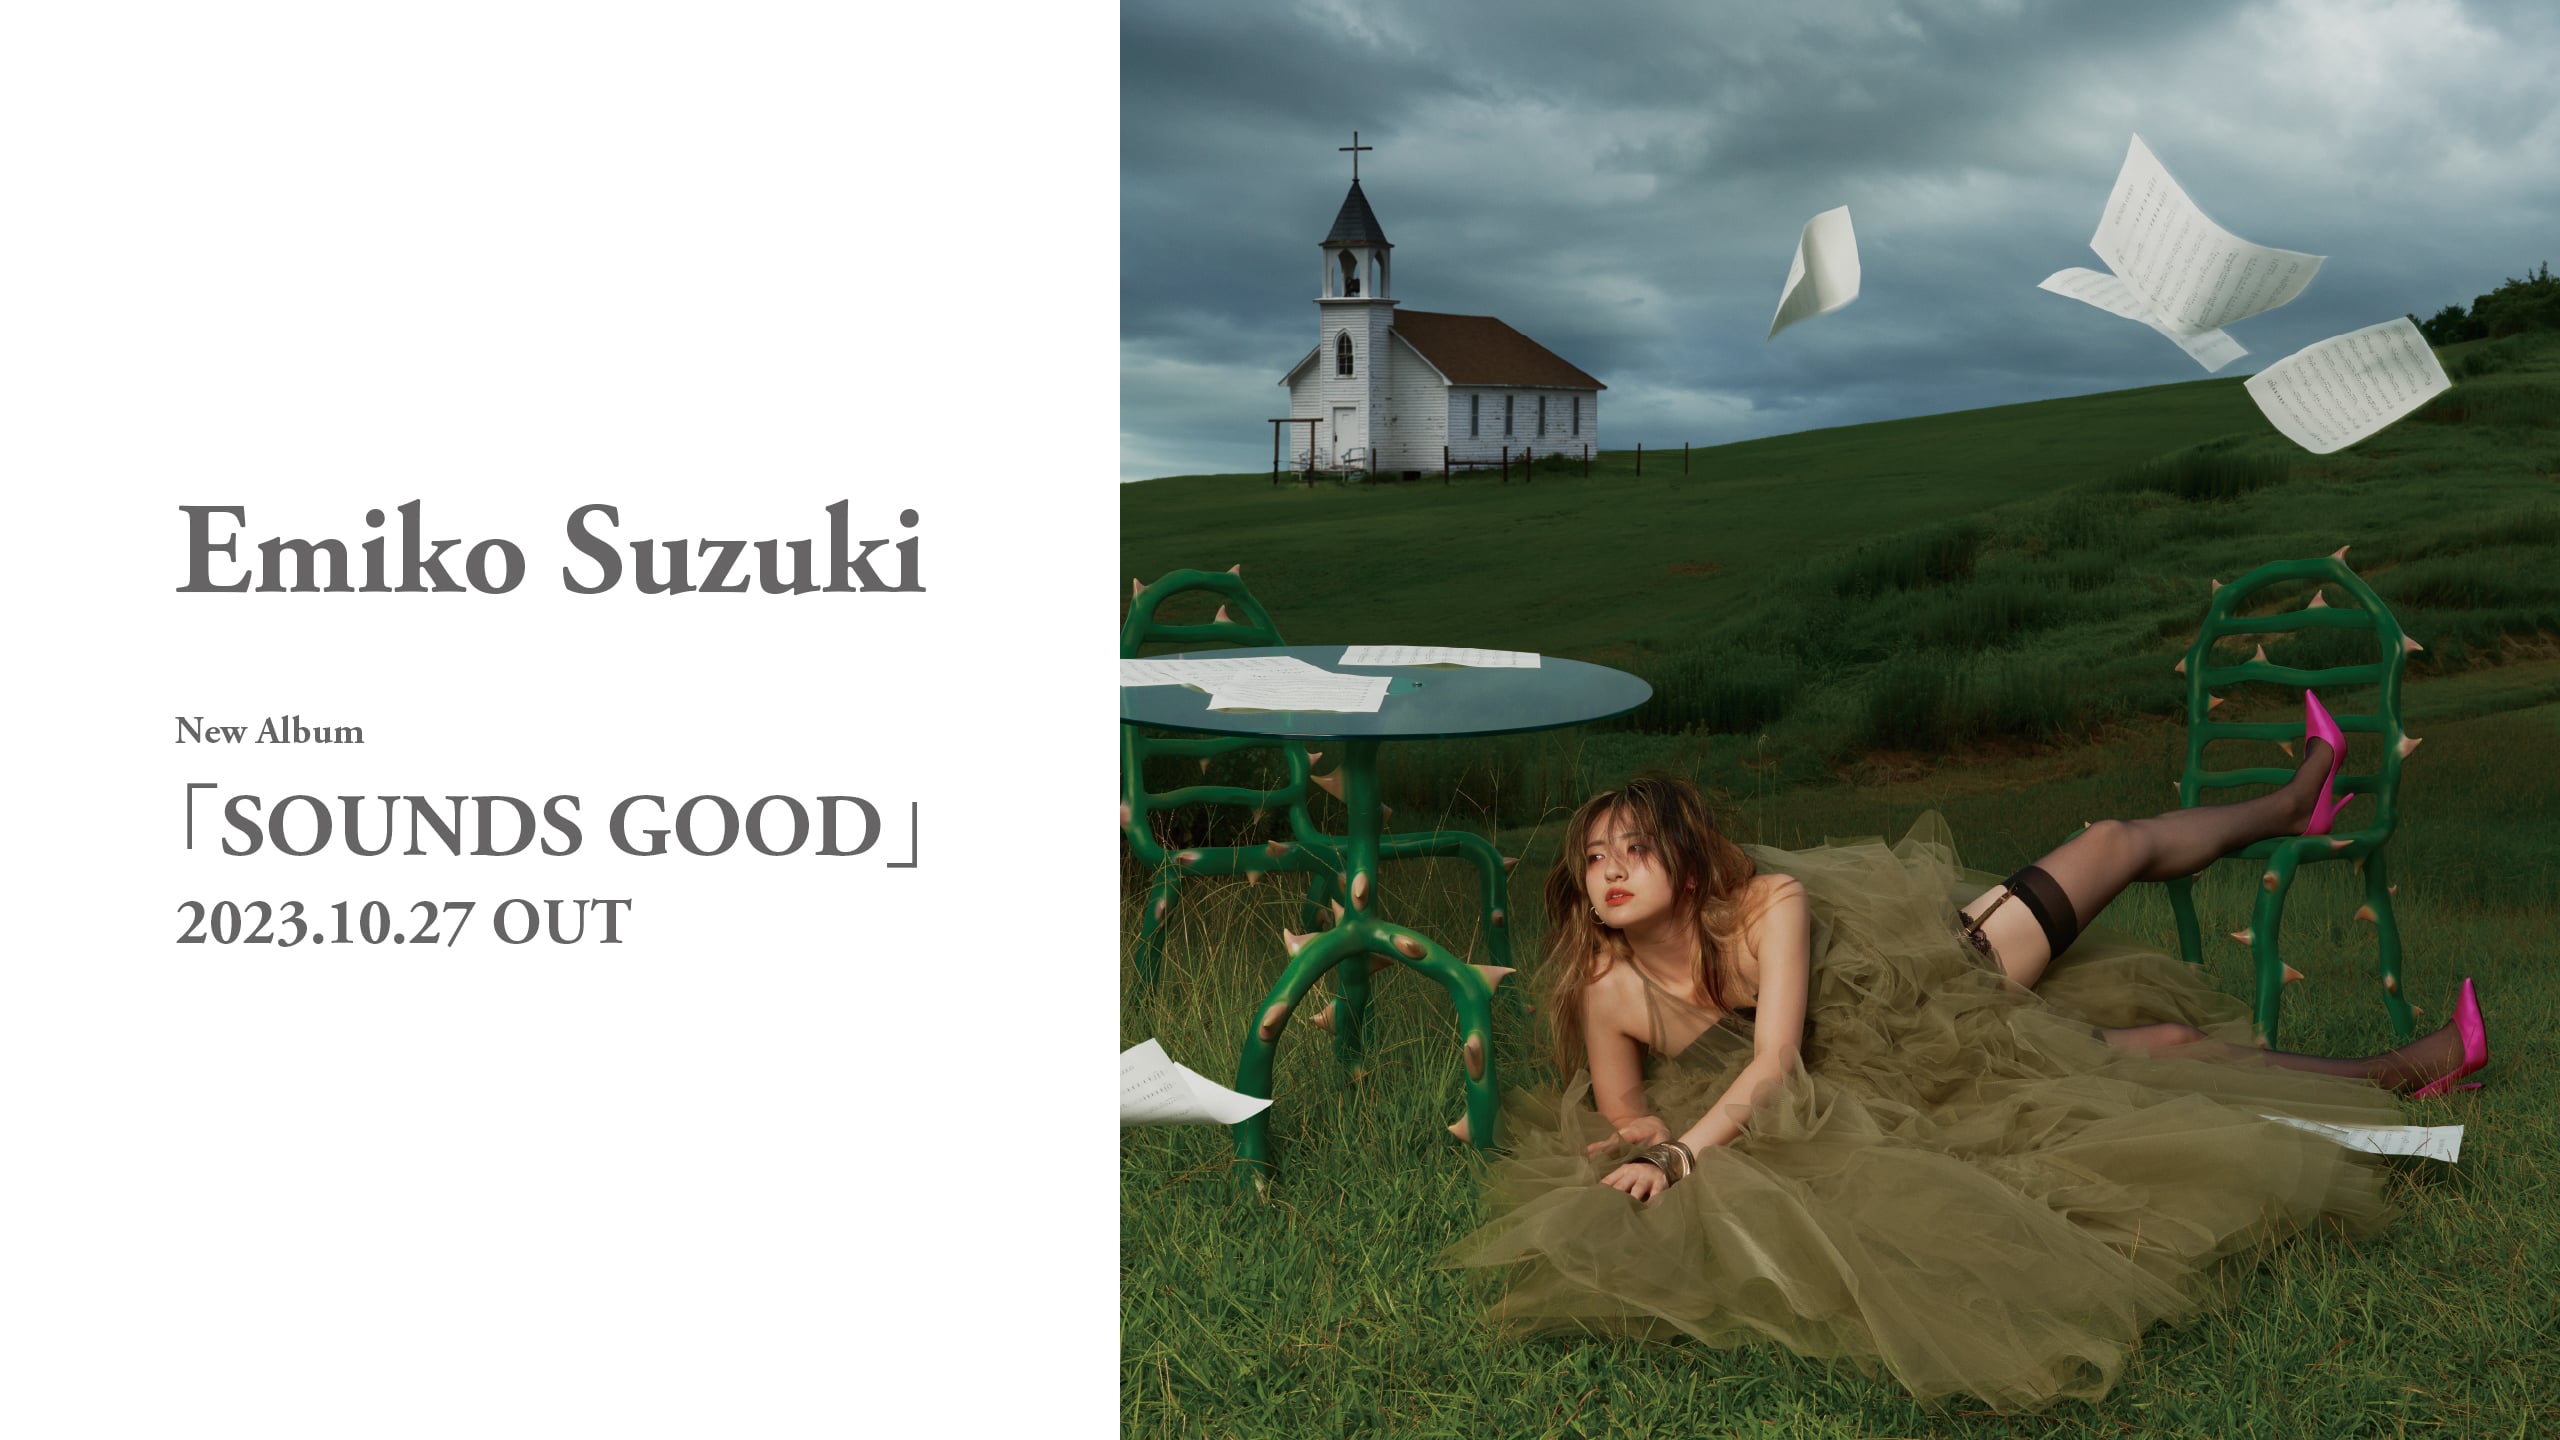 Emiko Suzuki New Album "SOUNDS GOOD" 2023.10.27 OUT